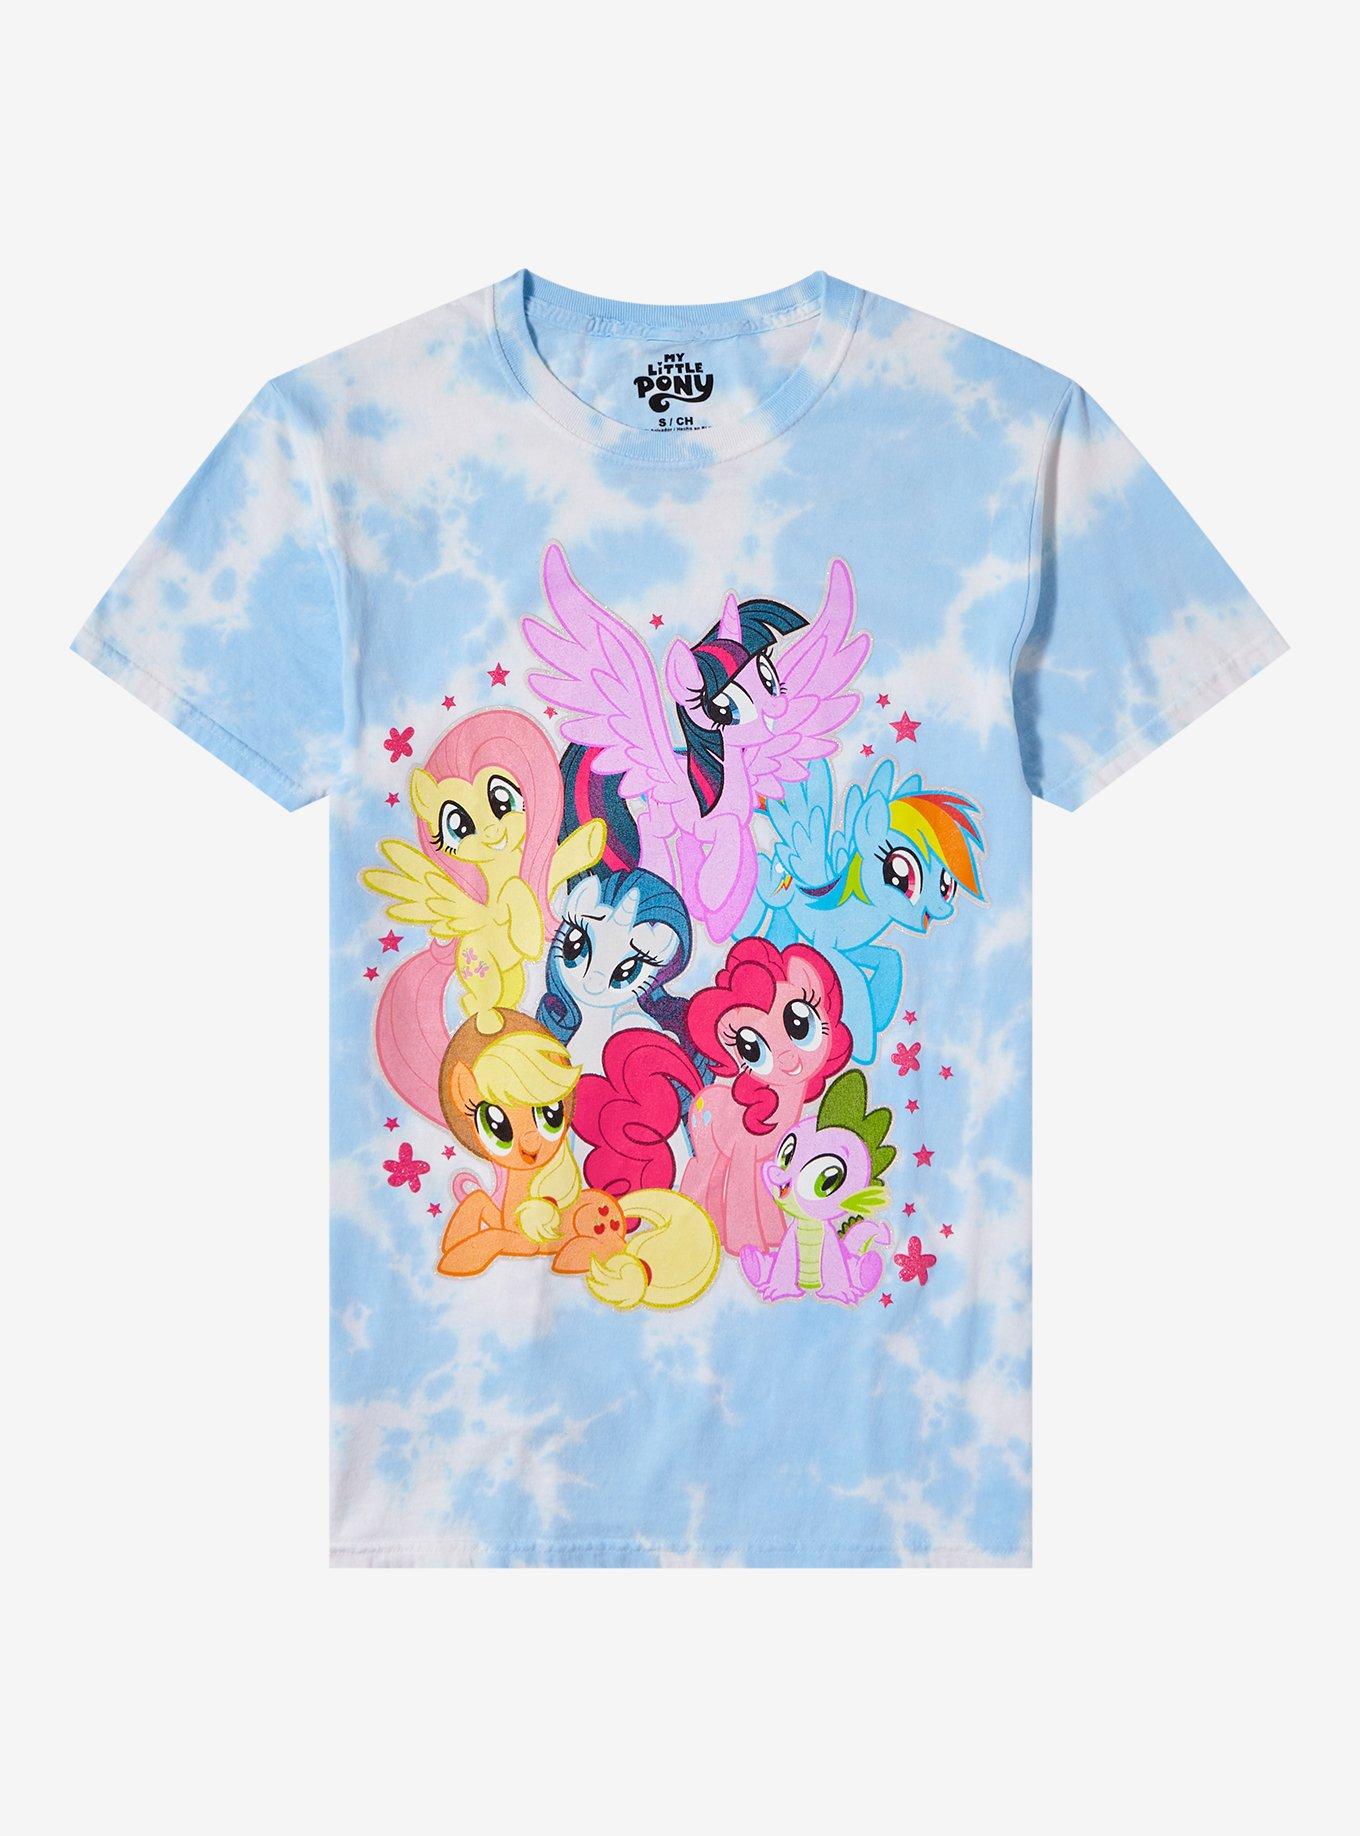 My Little Pony Characters Tie-Dye Boyfriend Fit Girls T-Shirt